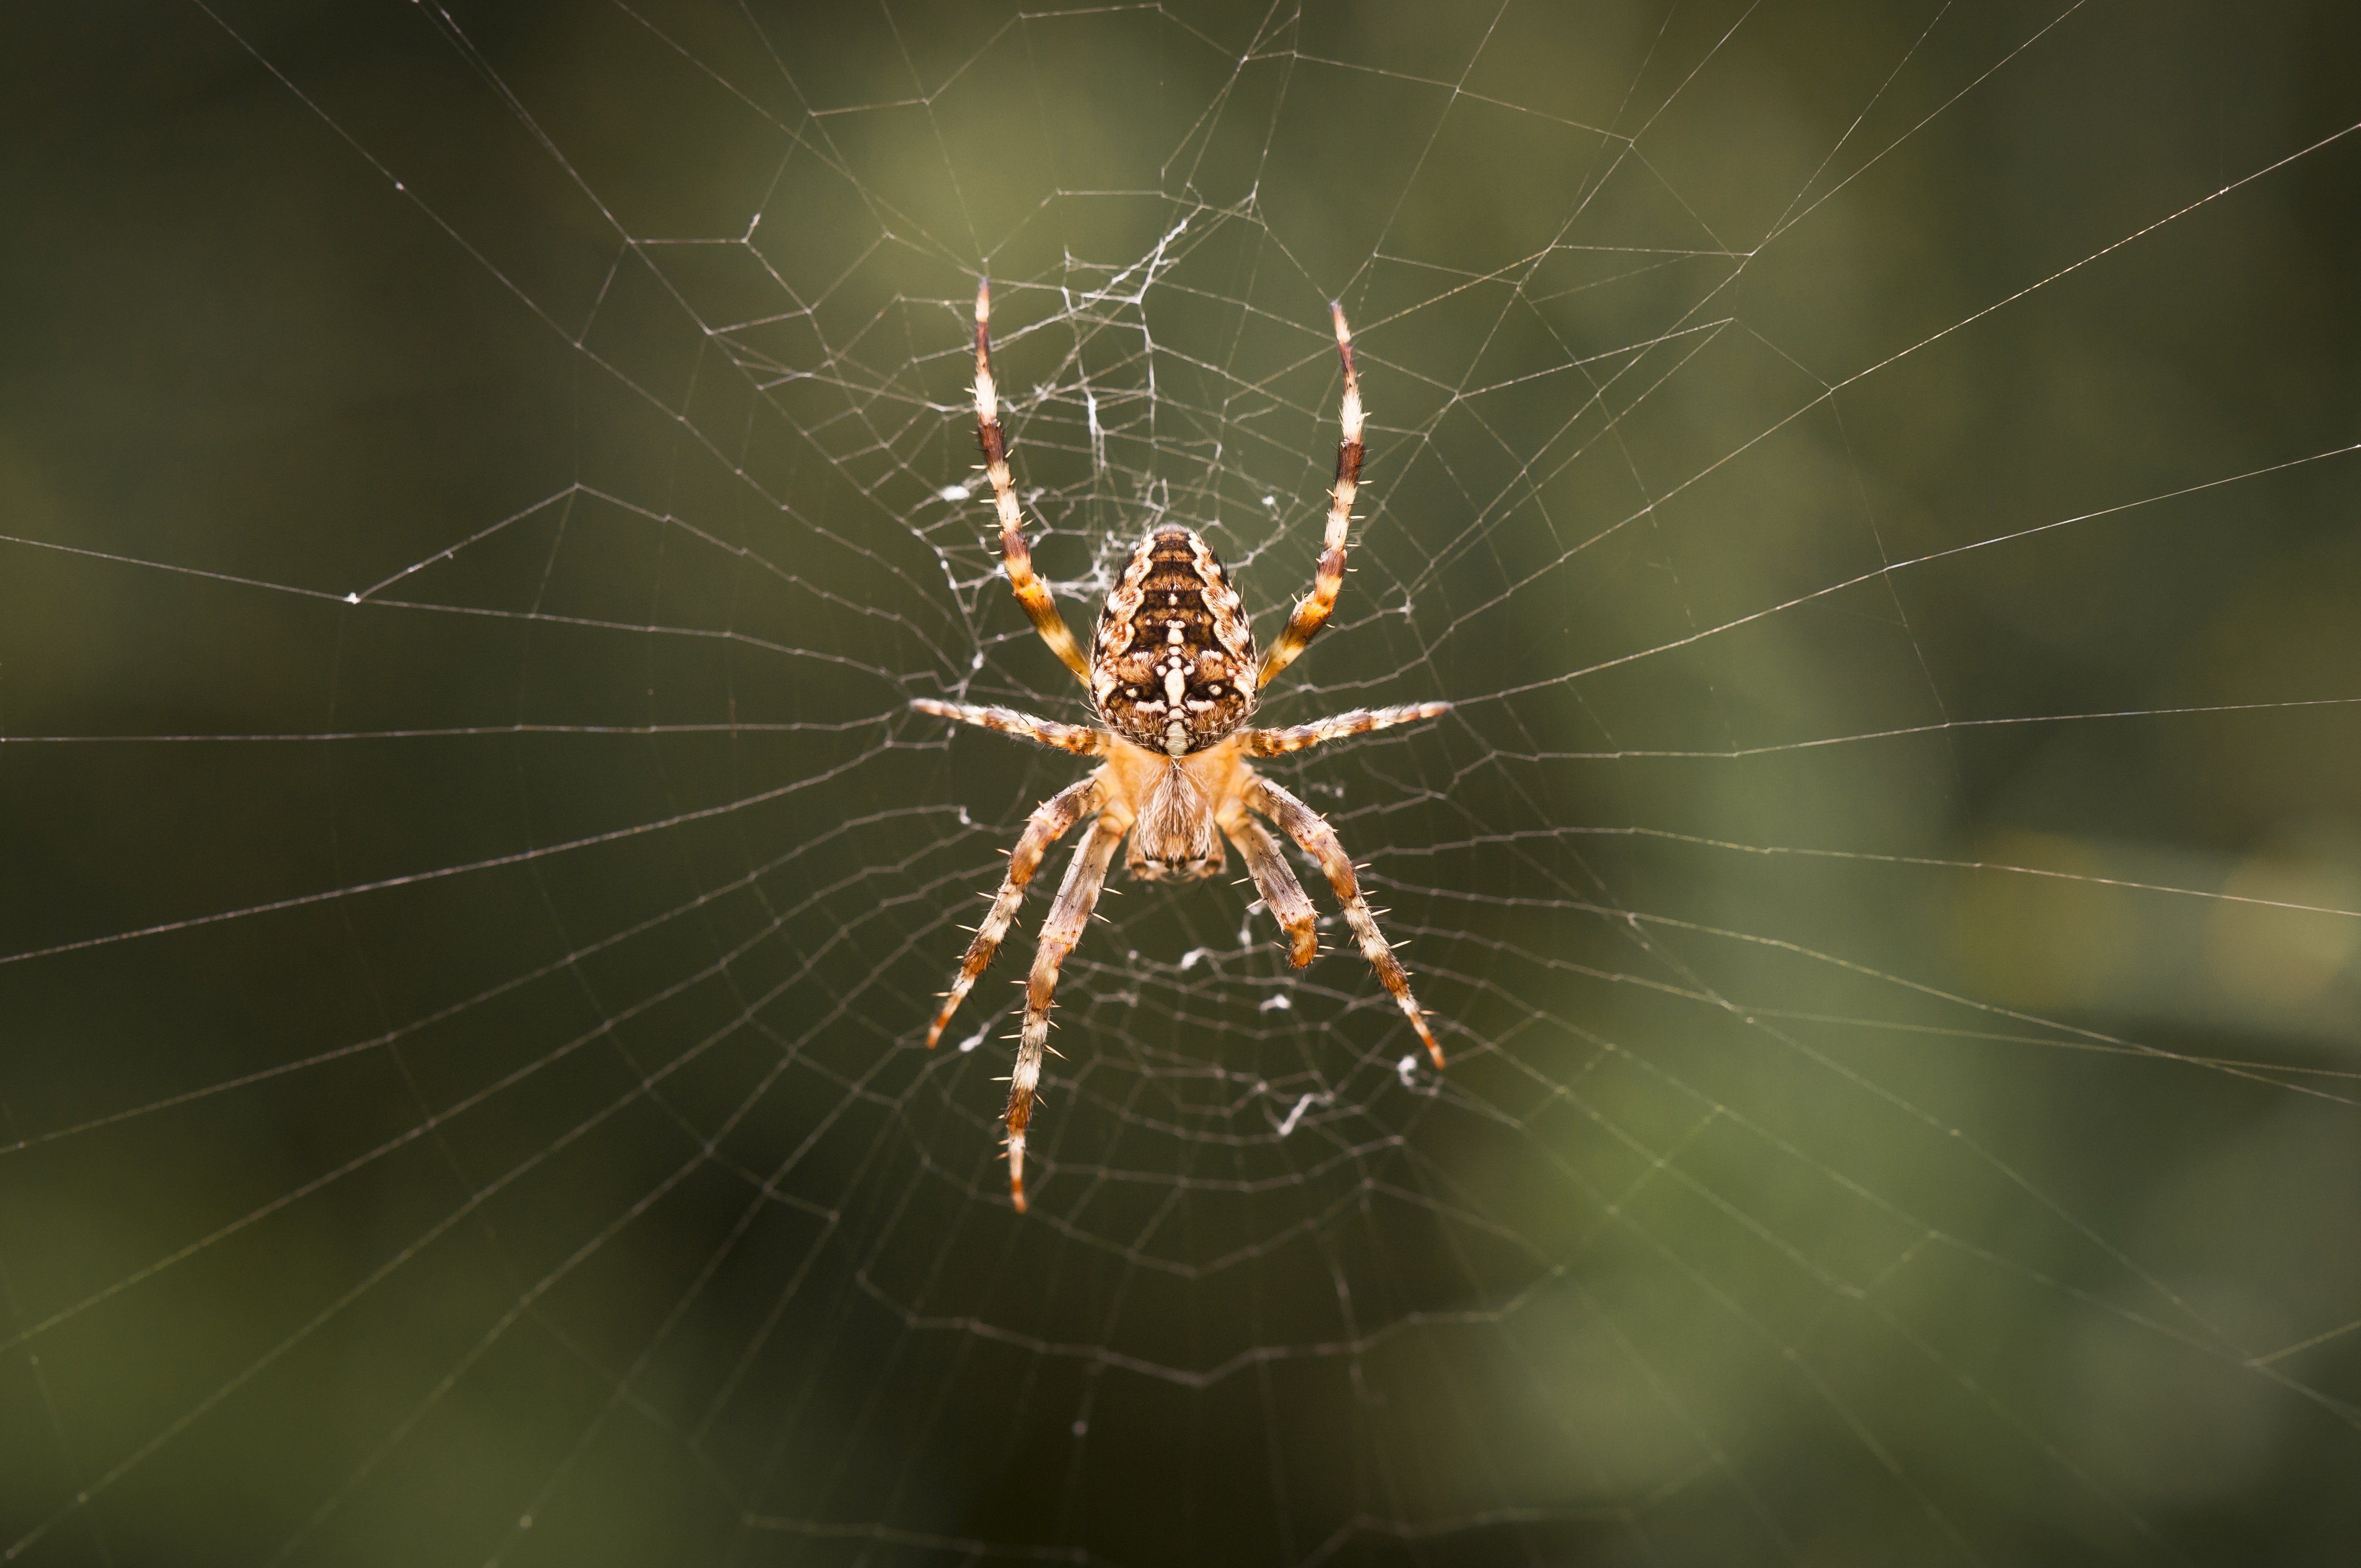 Während einer Sonnenfinsternis beginnen einige Spinnenarten, ihre Netze während einer Sonnenfinsternis aufzureißen, was normalerweise am Ende des Tages der Fall ist